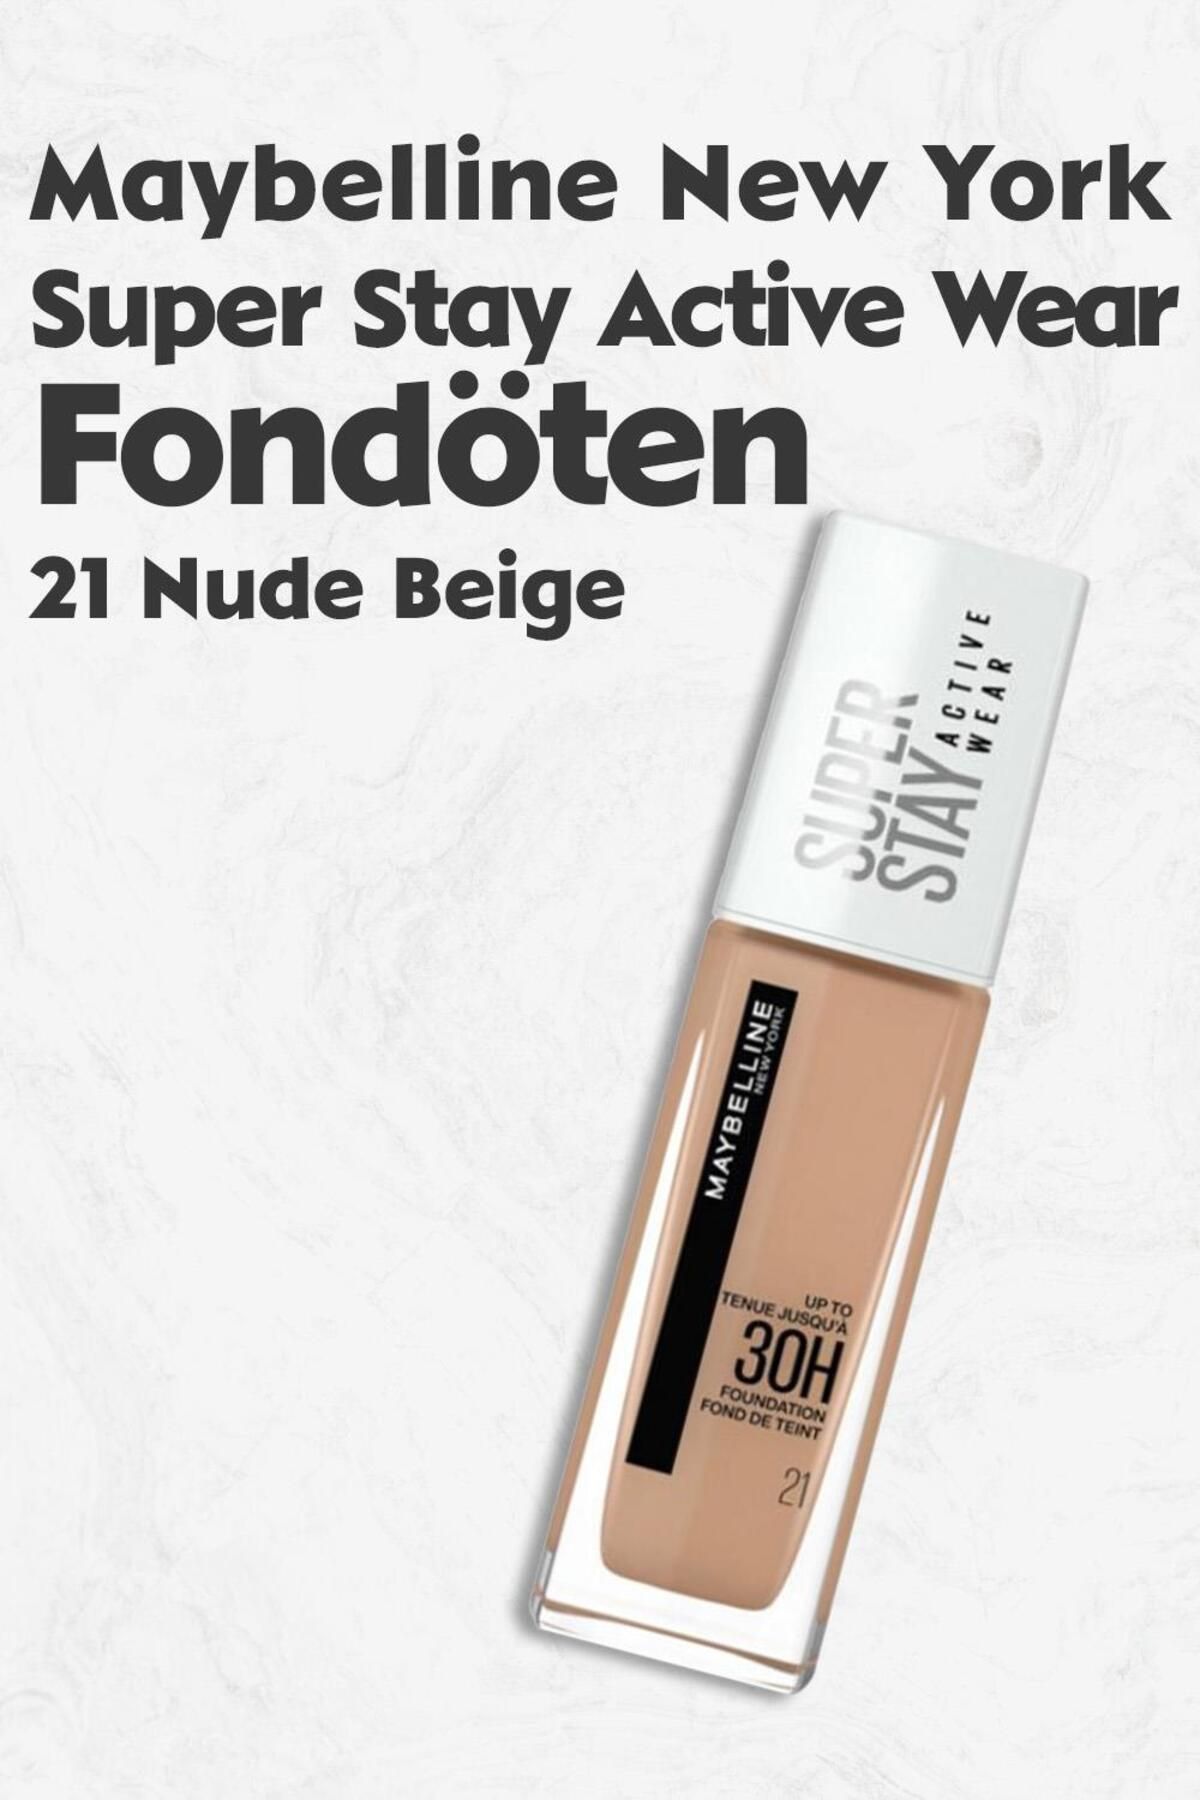 Maybelline New York Super Stay Beige Fiyatı, Trendyol Fondöten Wear Yorumları 21 - Active Nude